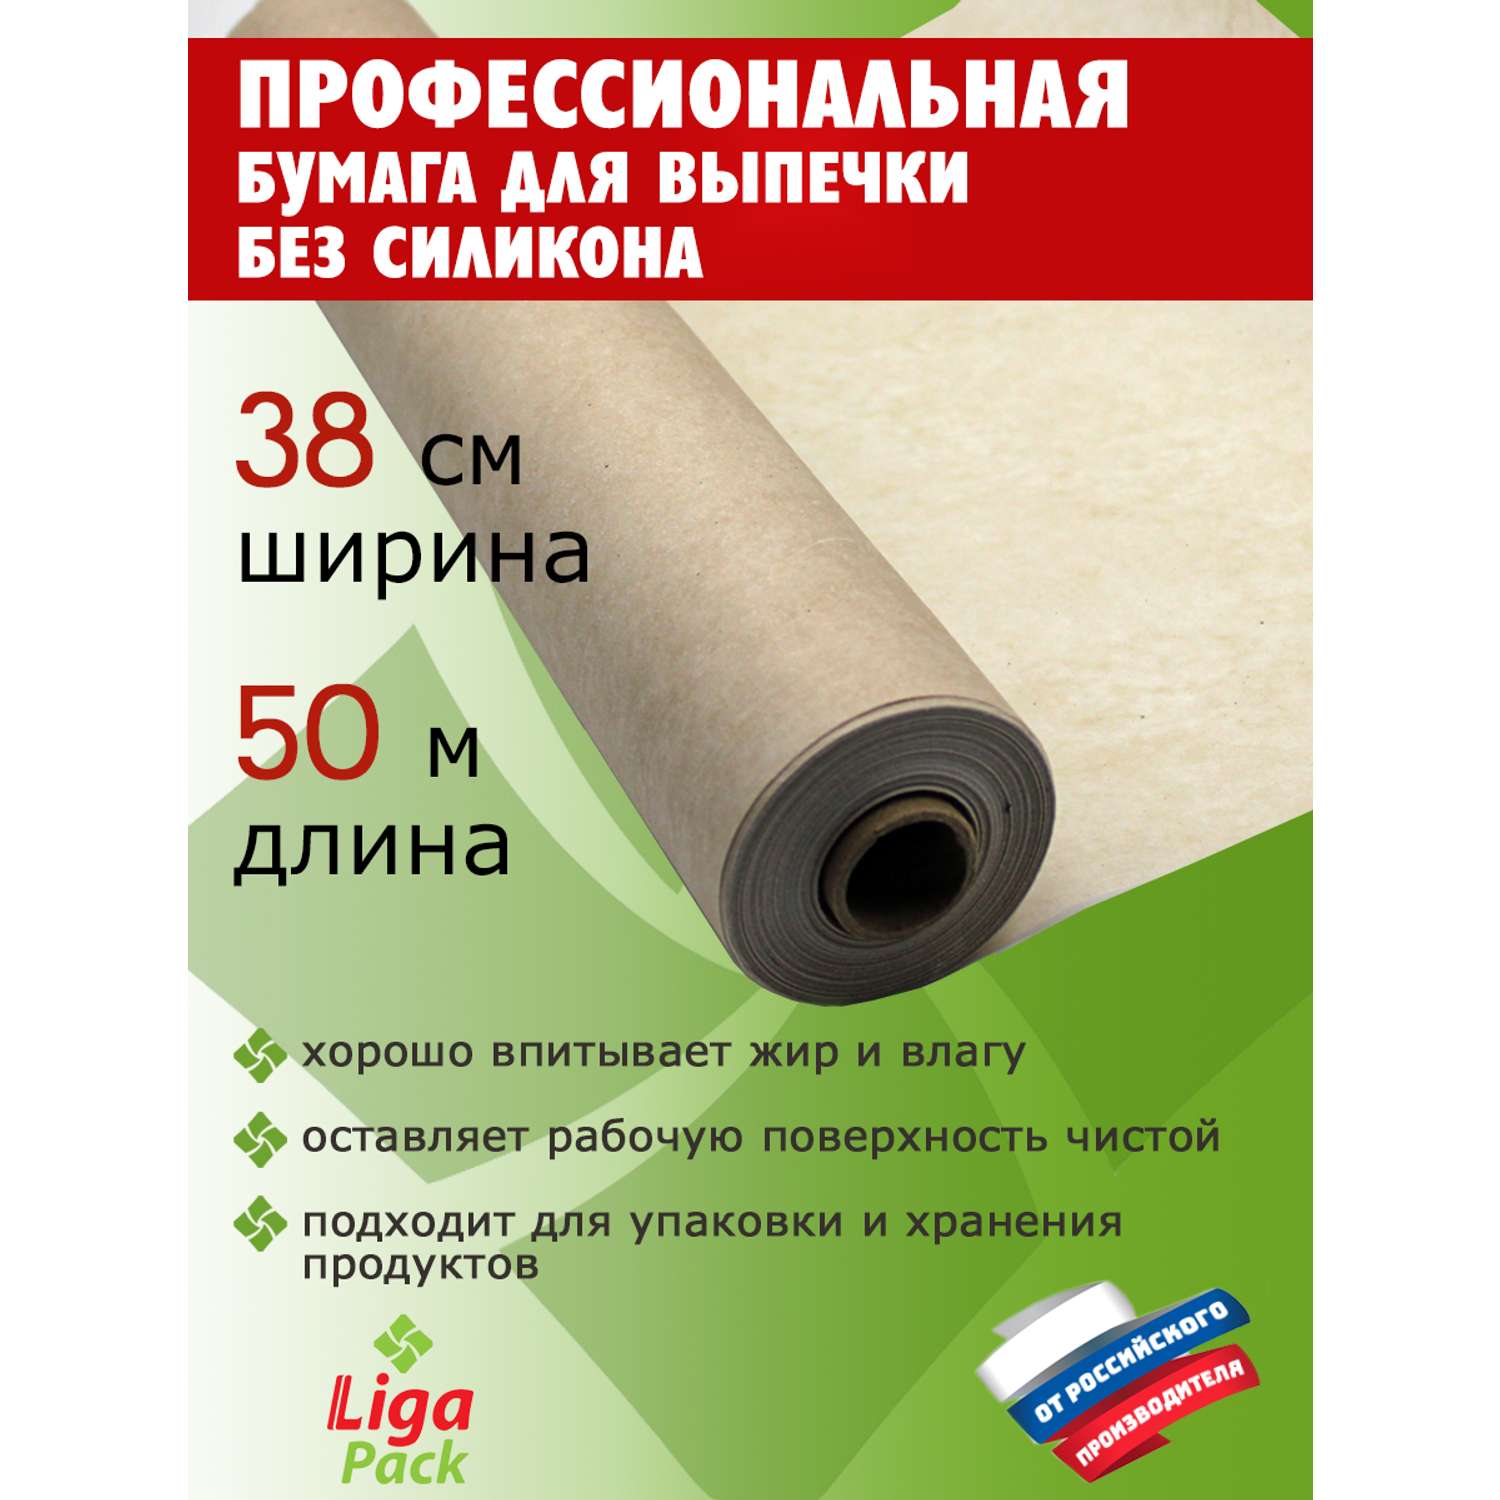 Бумага для выпечки Liga Pack 50 м х 38 см 45 гр/м2 без силикона профессиональная - фото 2